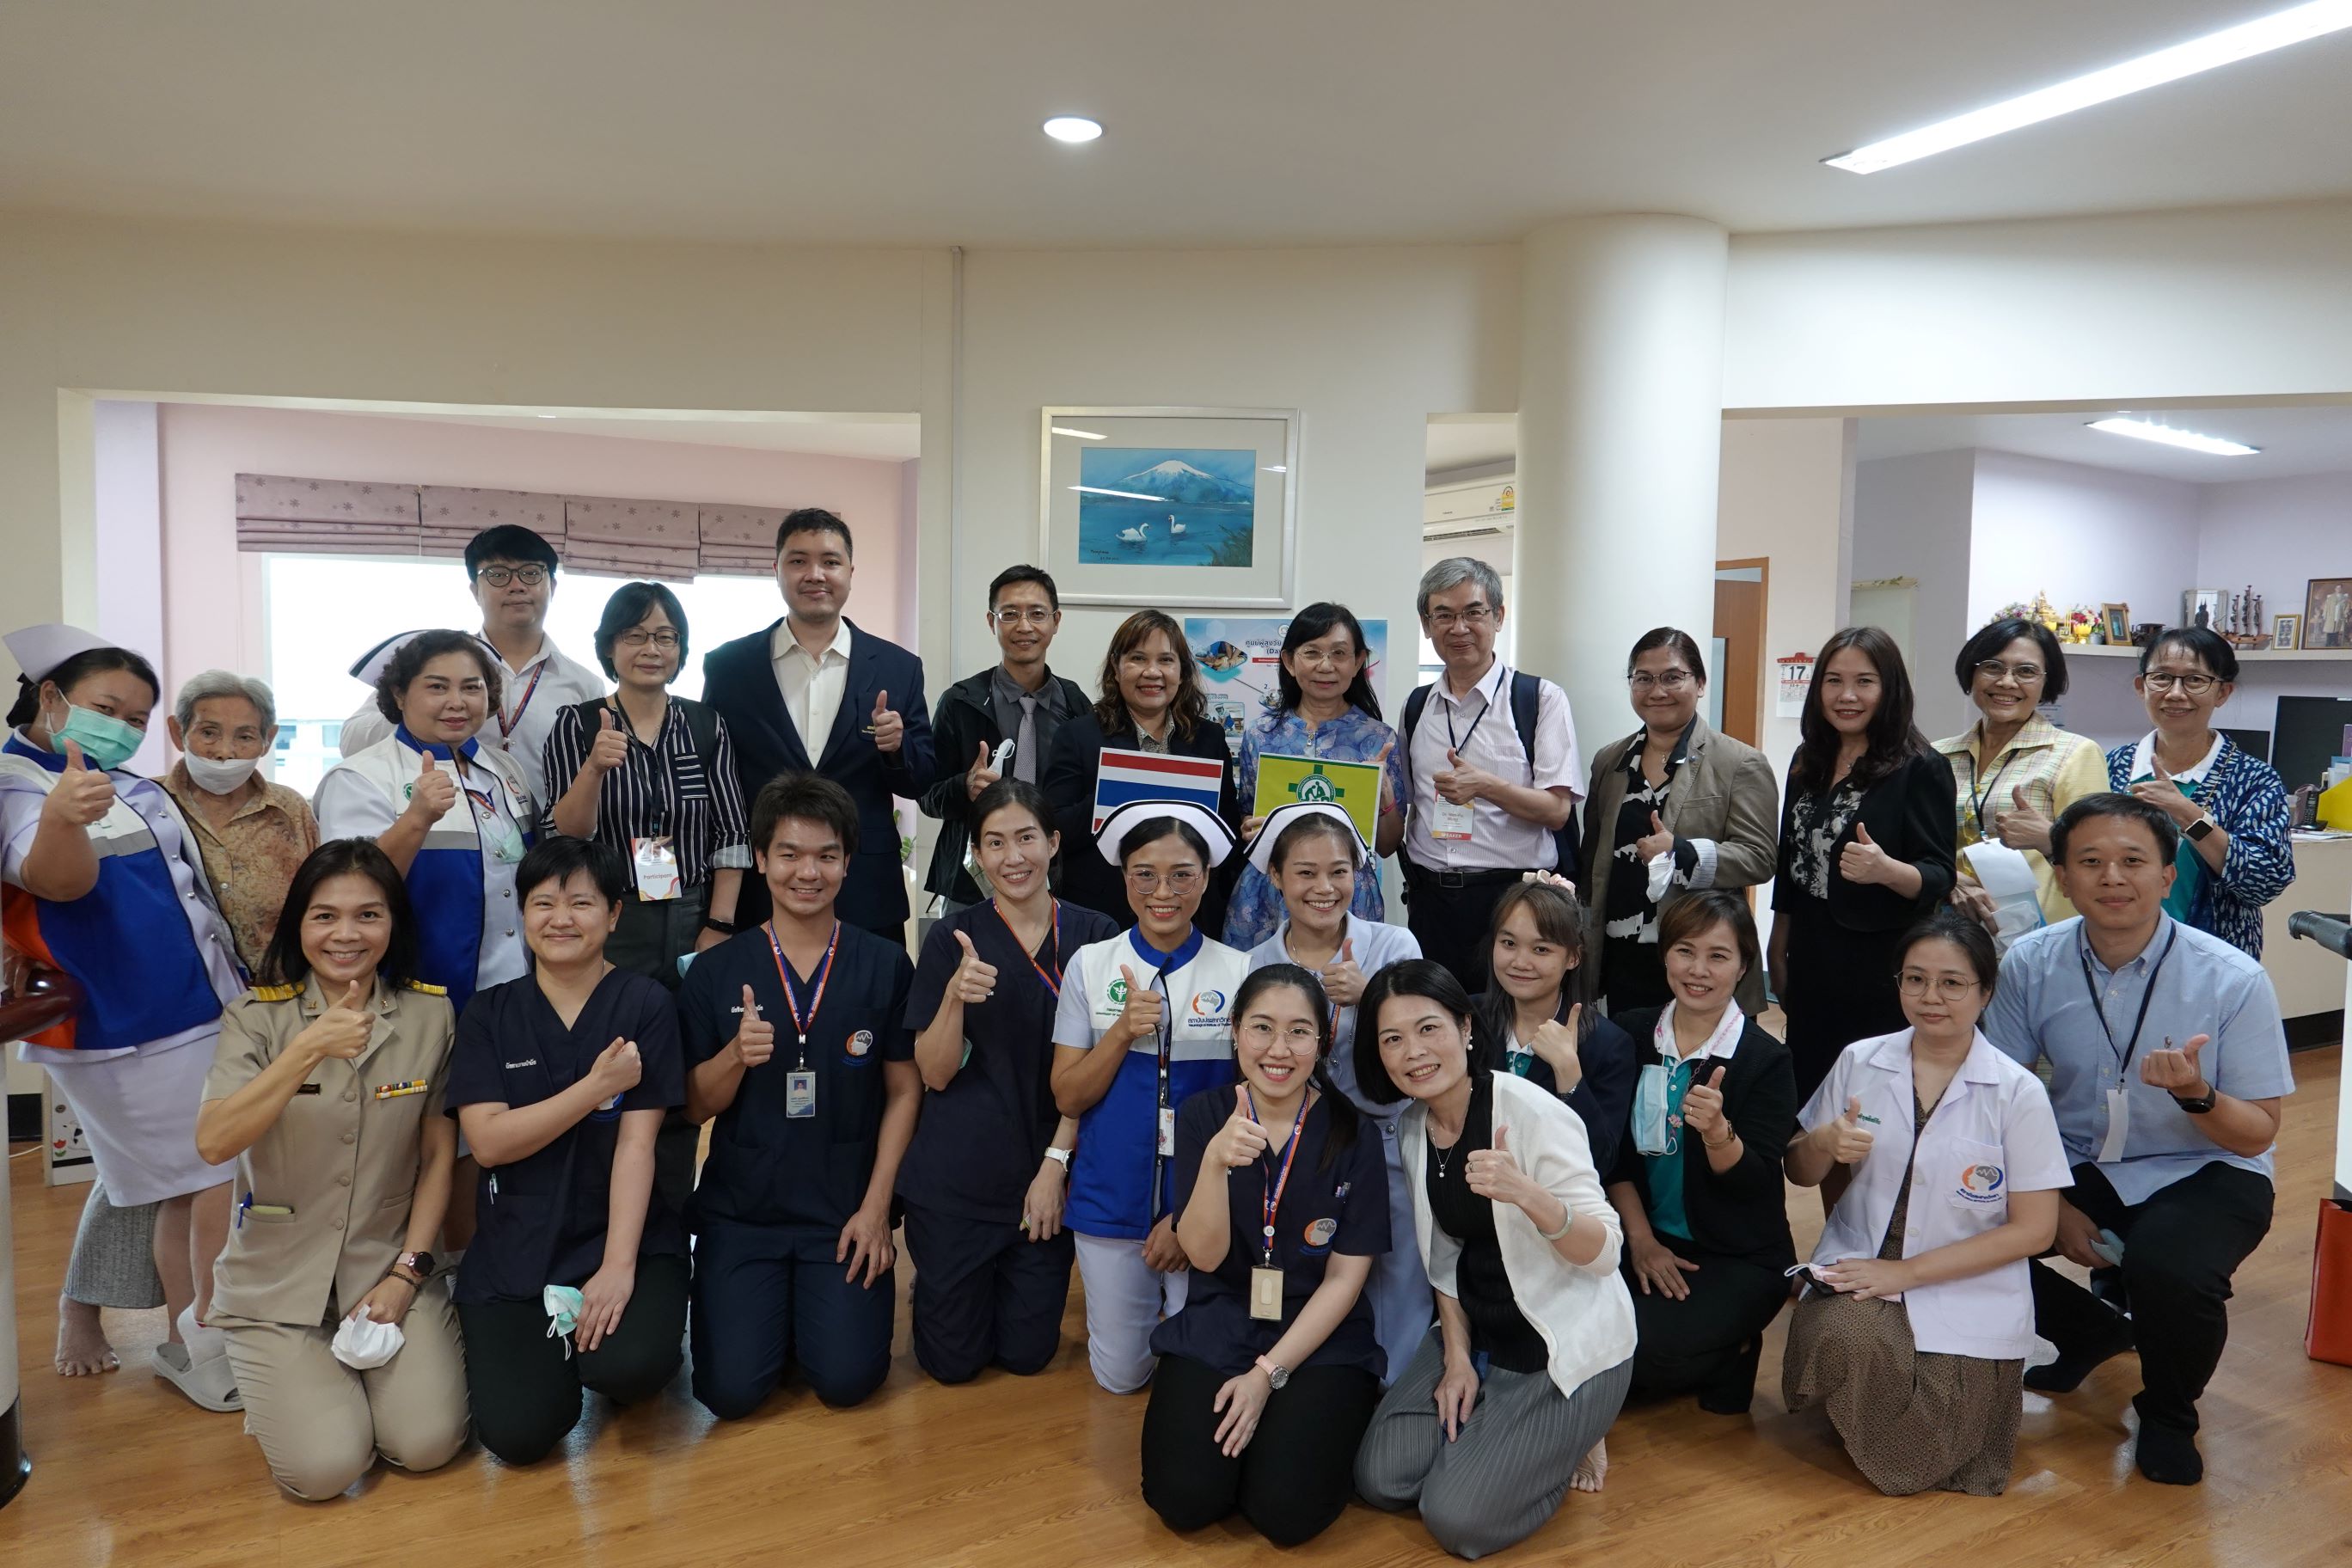 參訪泰國公共衛生部老人醫學研究所暨日照中心合影。